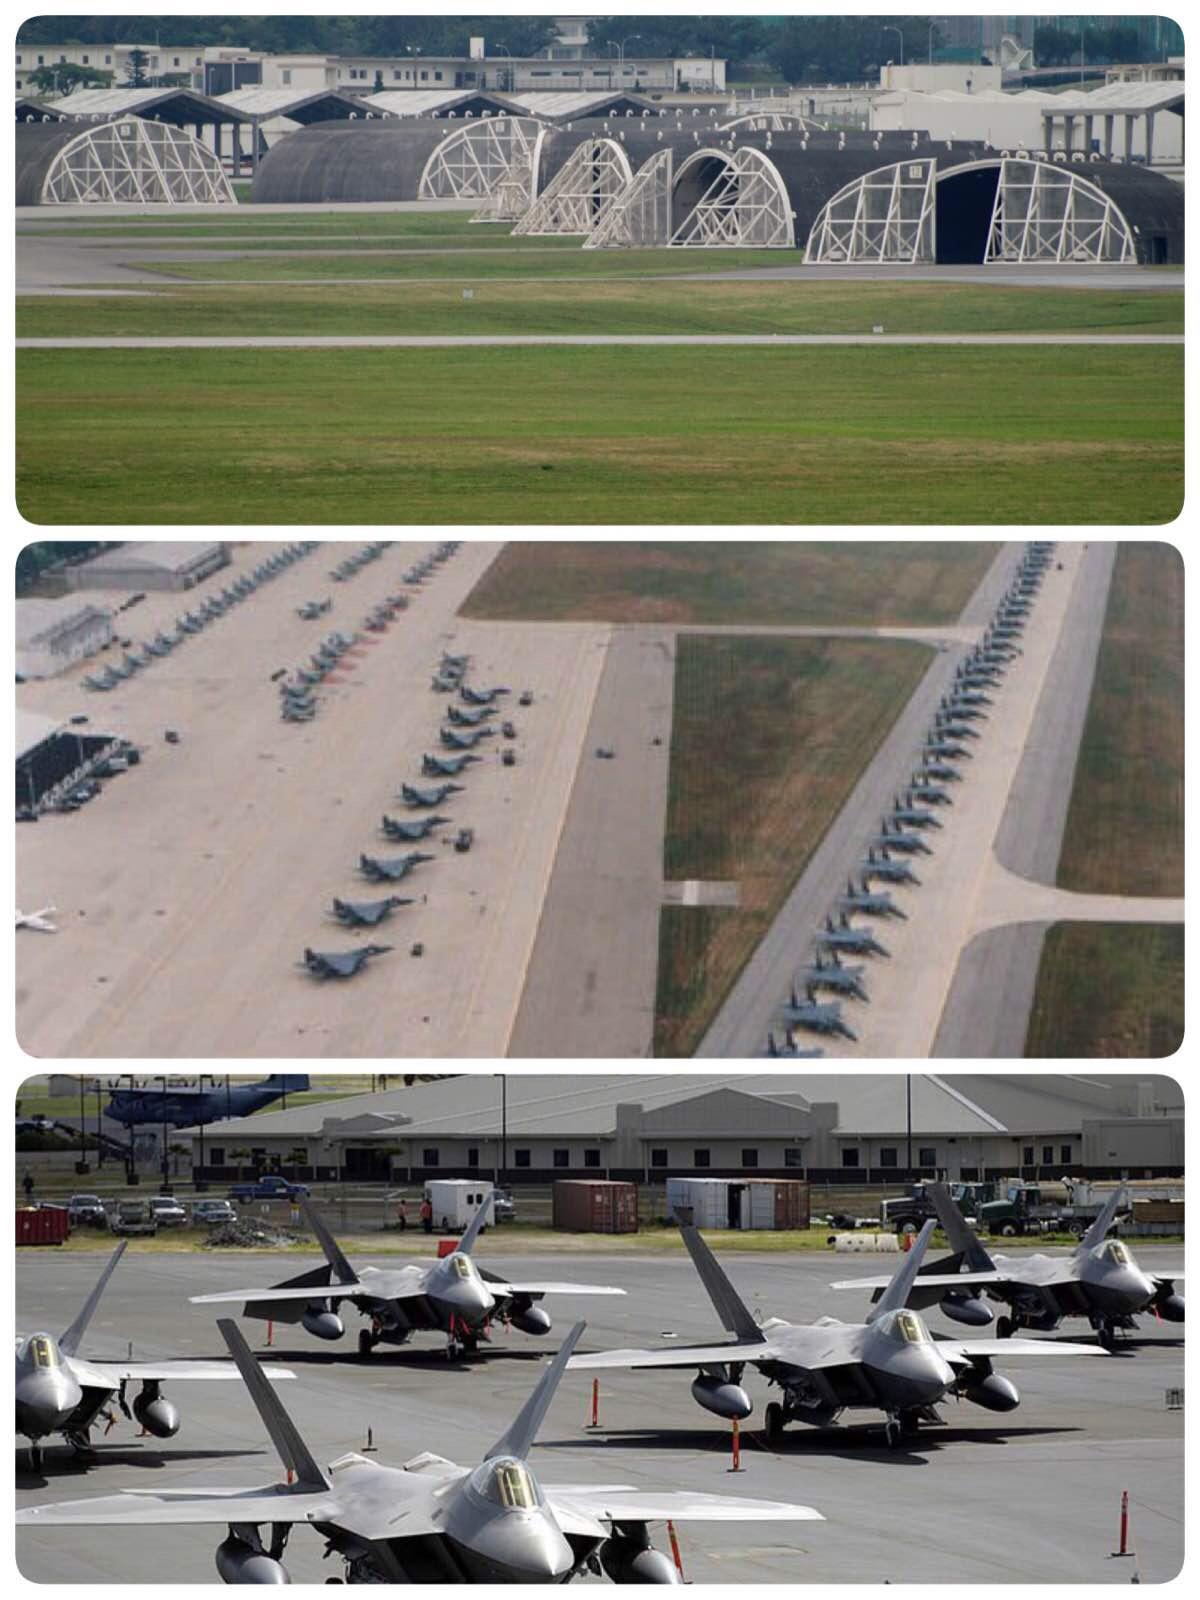 嘉手纳空军基地是美国在远东地区最大的战略空军基地。总面积约19.95平方公里，是日本最大民用机场羽田